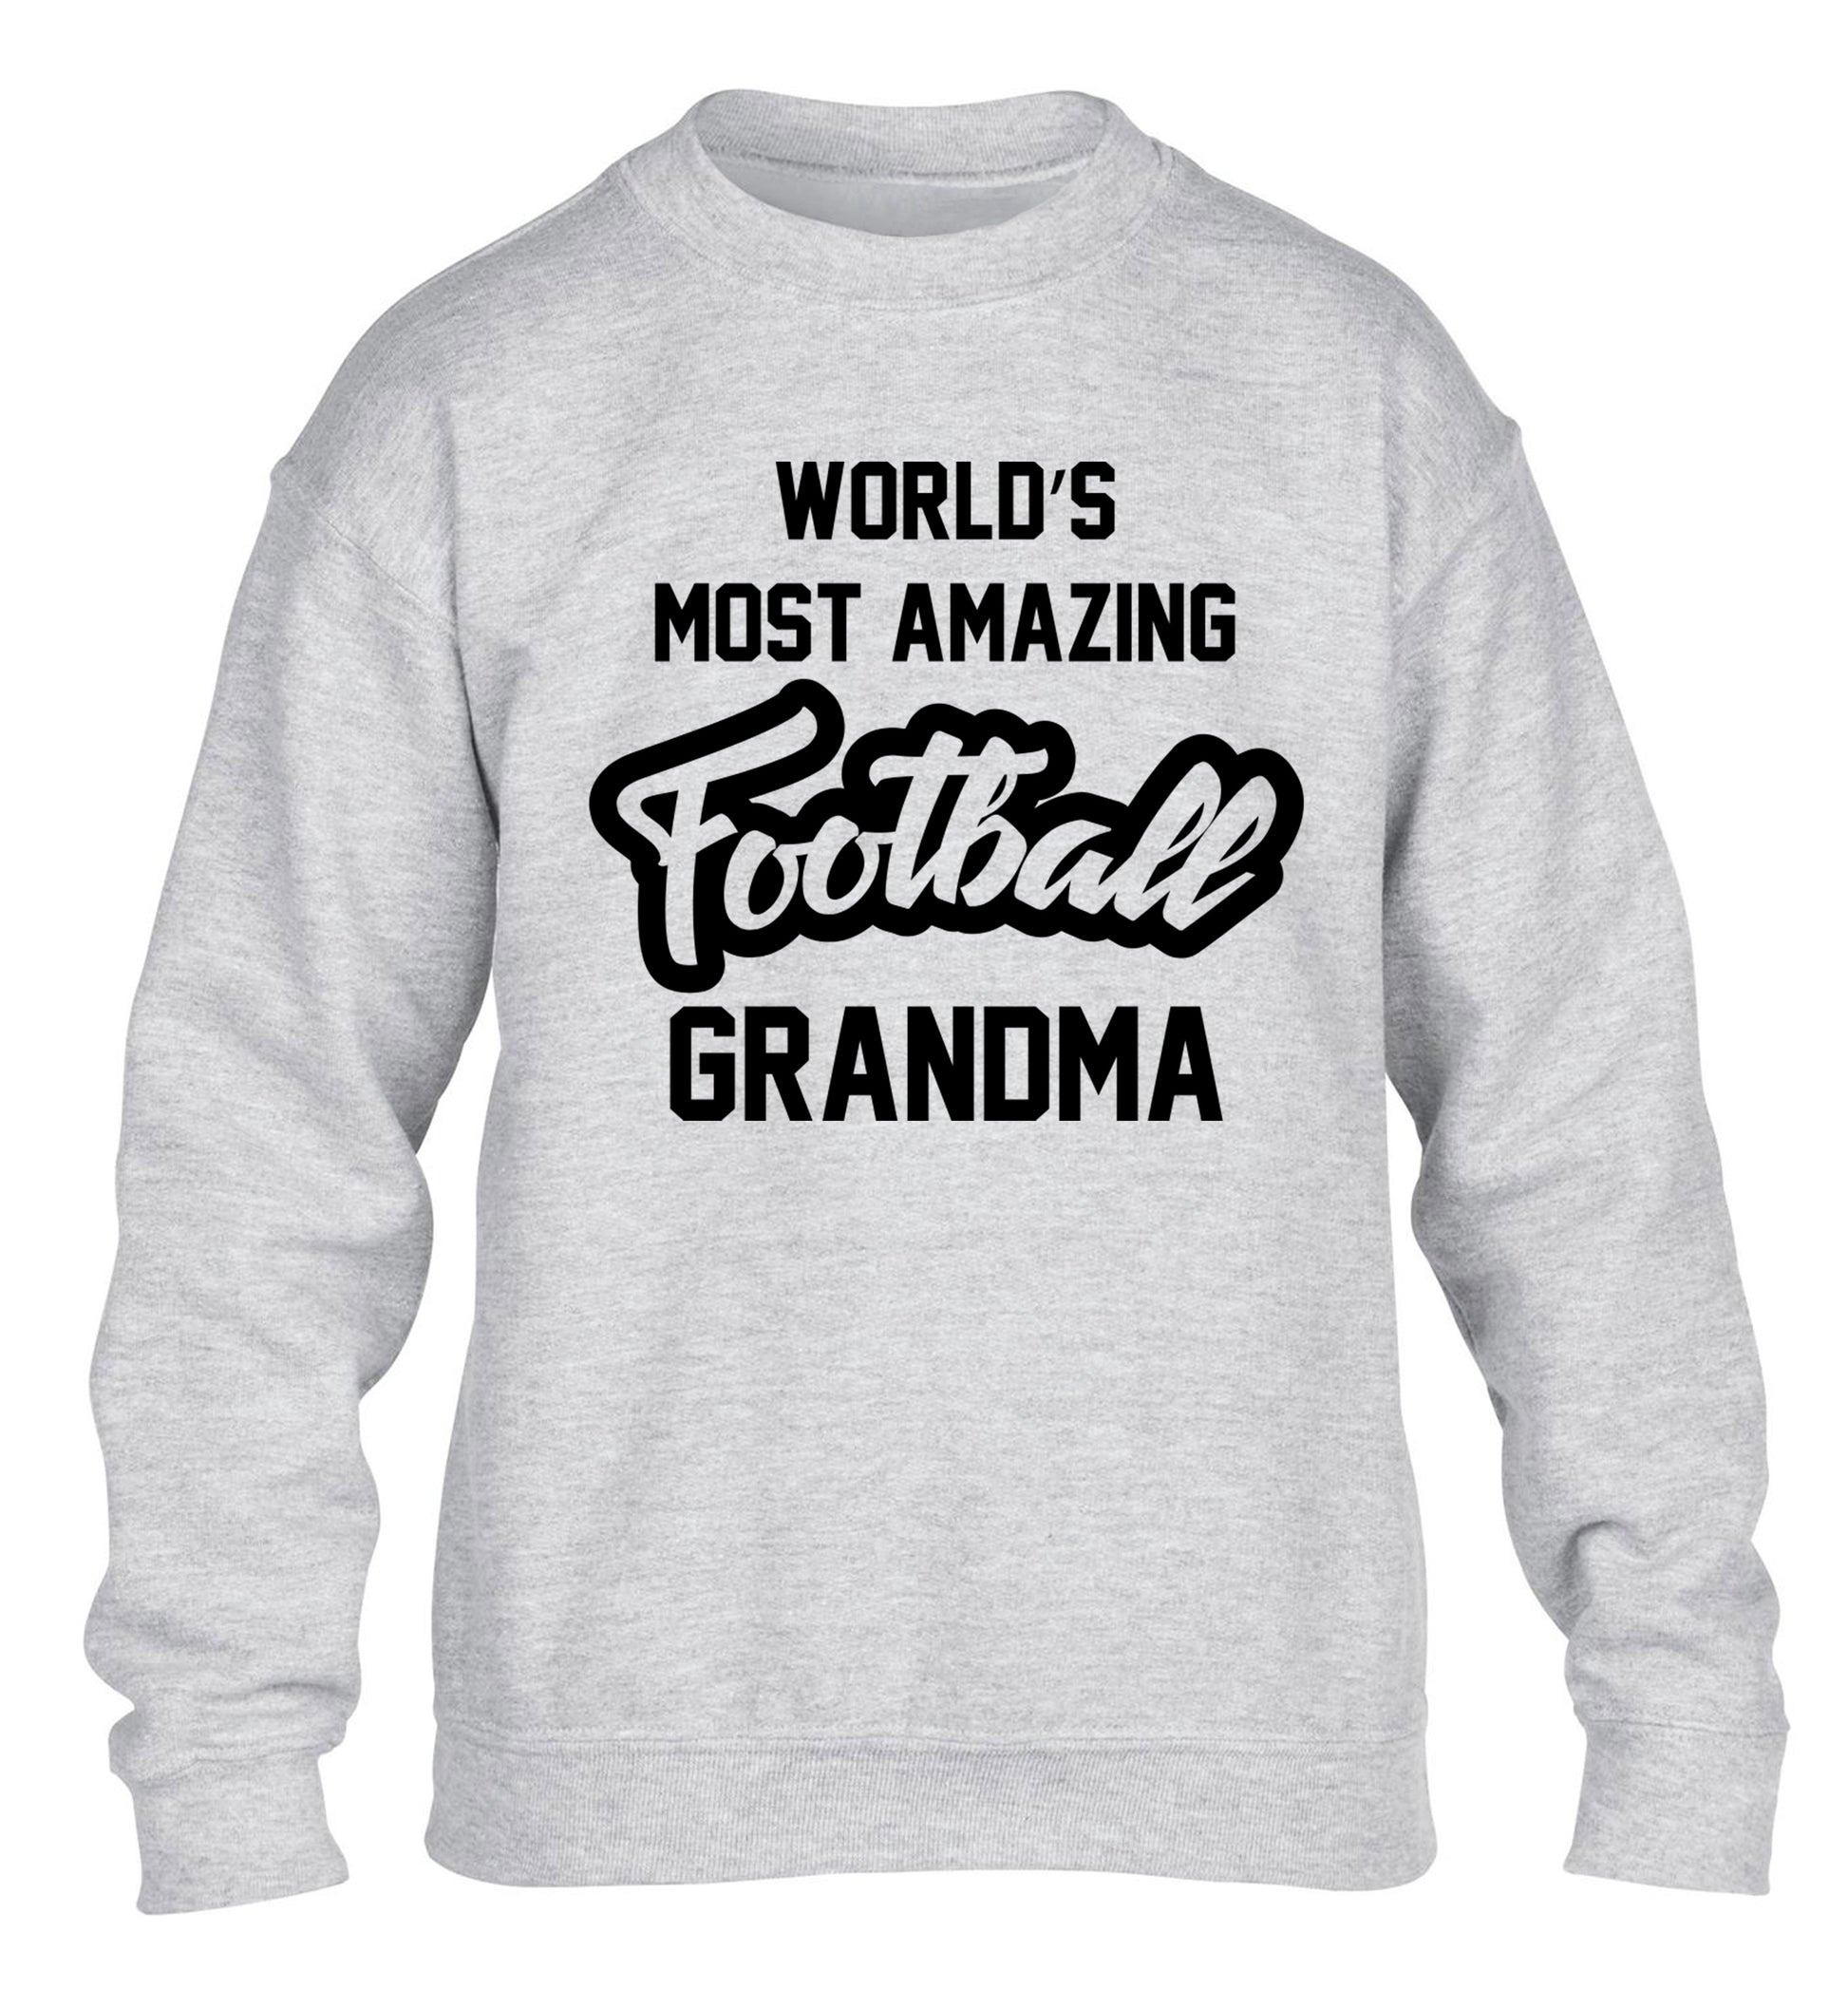 Worlds most amazing football grandma children's grey sweater 12-14 Years